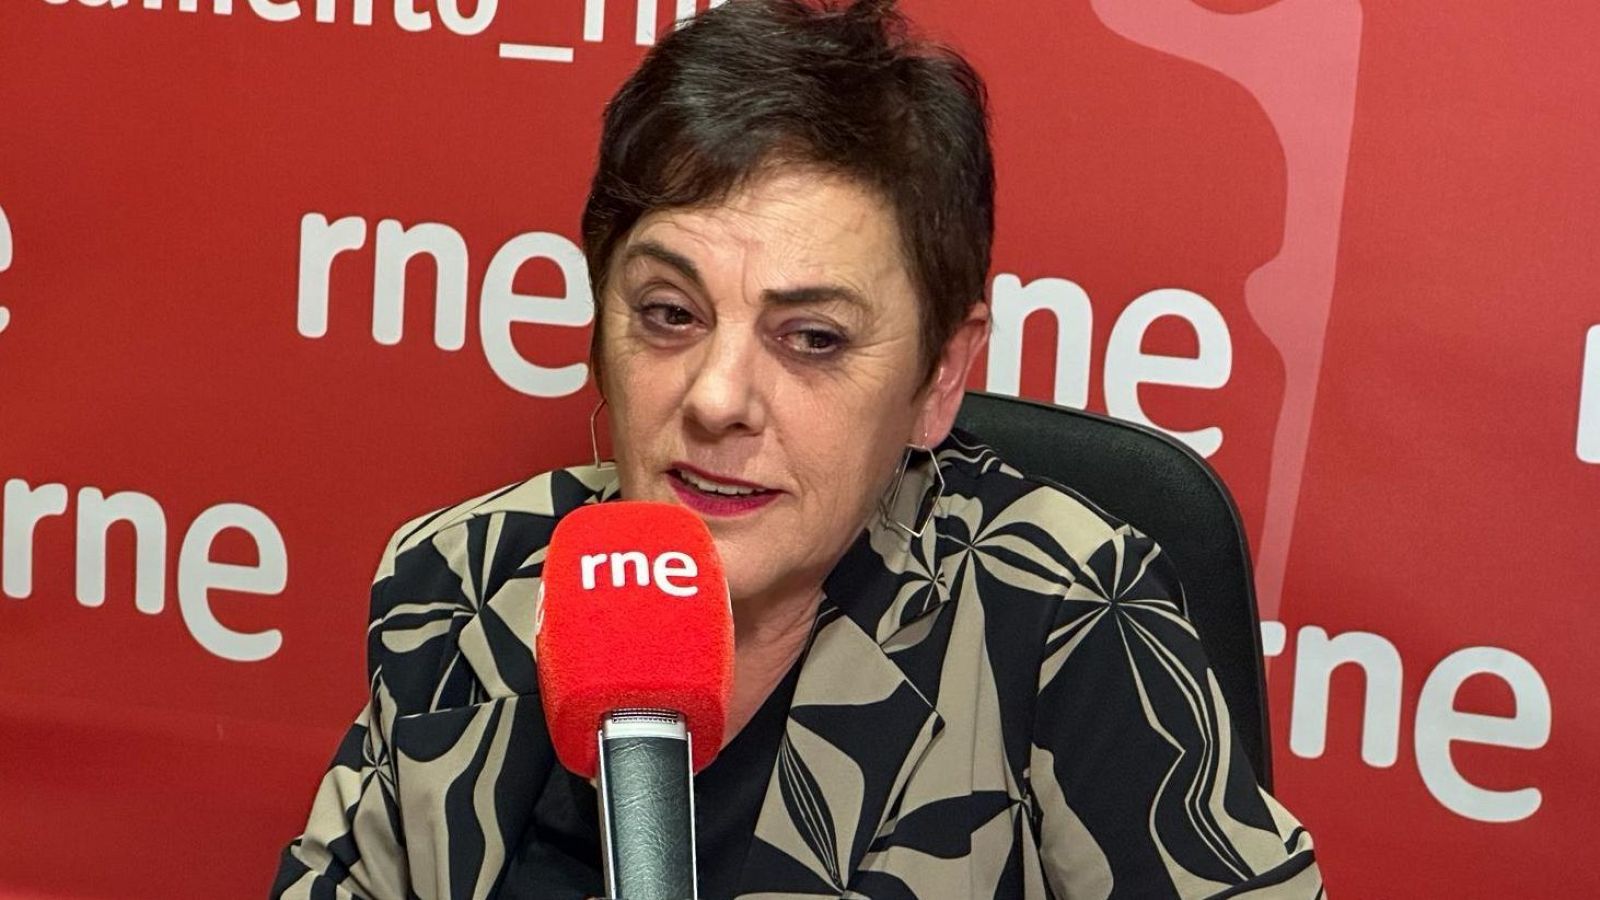 Parlamento RNE - Mertxe Aizpurua: "El PSE debería estar preparado para aceptar un lehendakari de Bildu" - Escuchar ahora